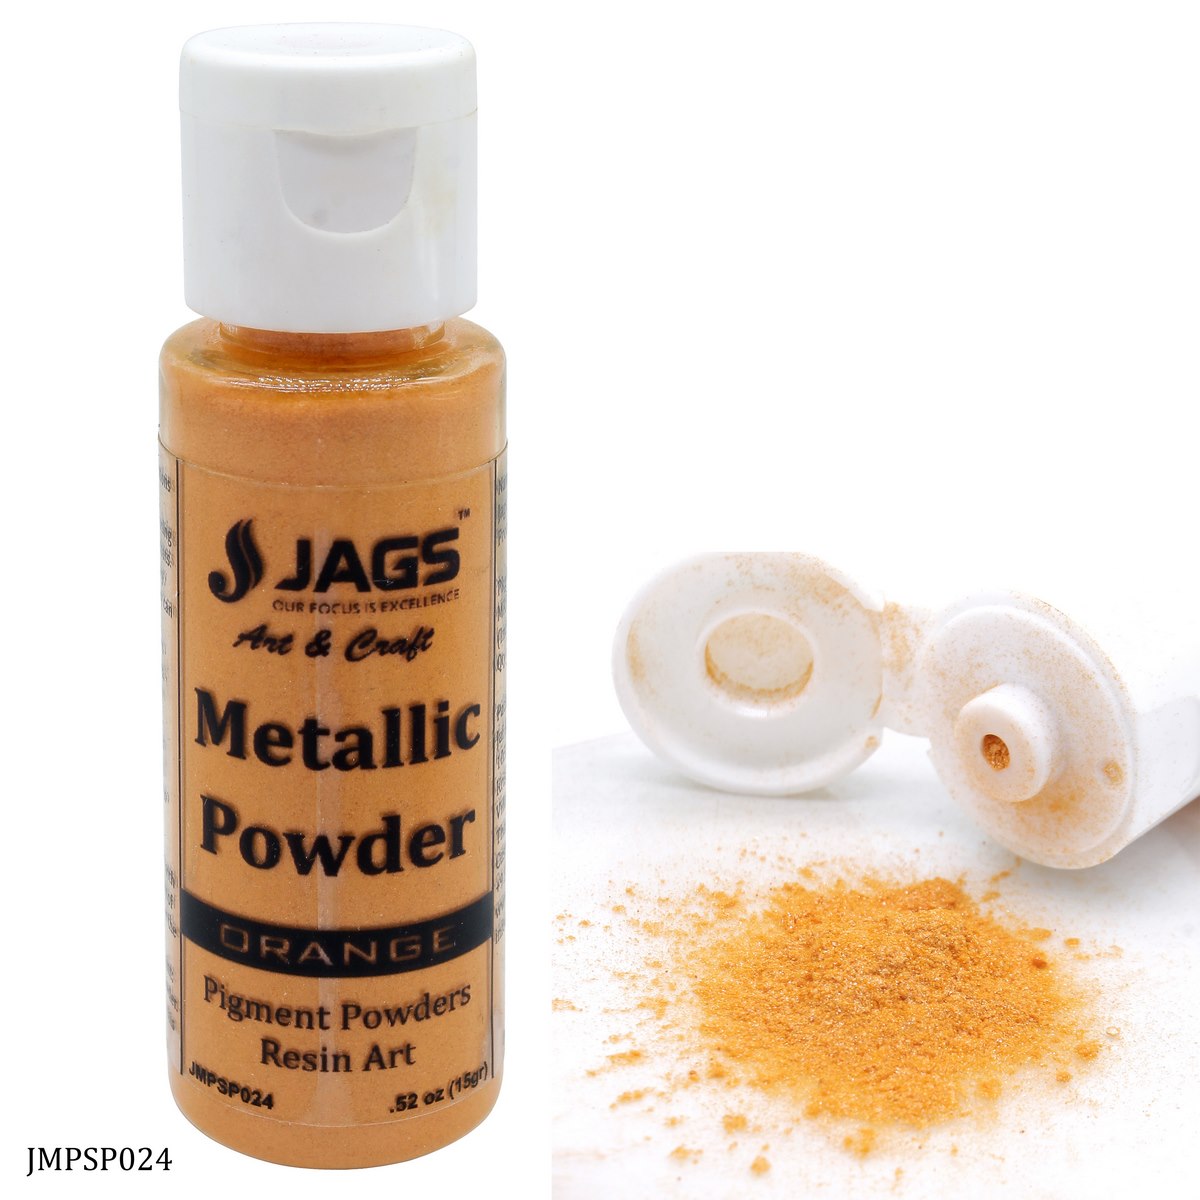 Jags Metallic Powder Orange 15Gms JMPSP024